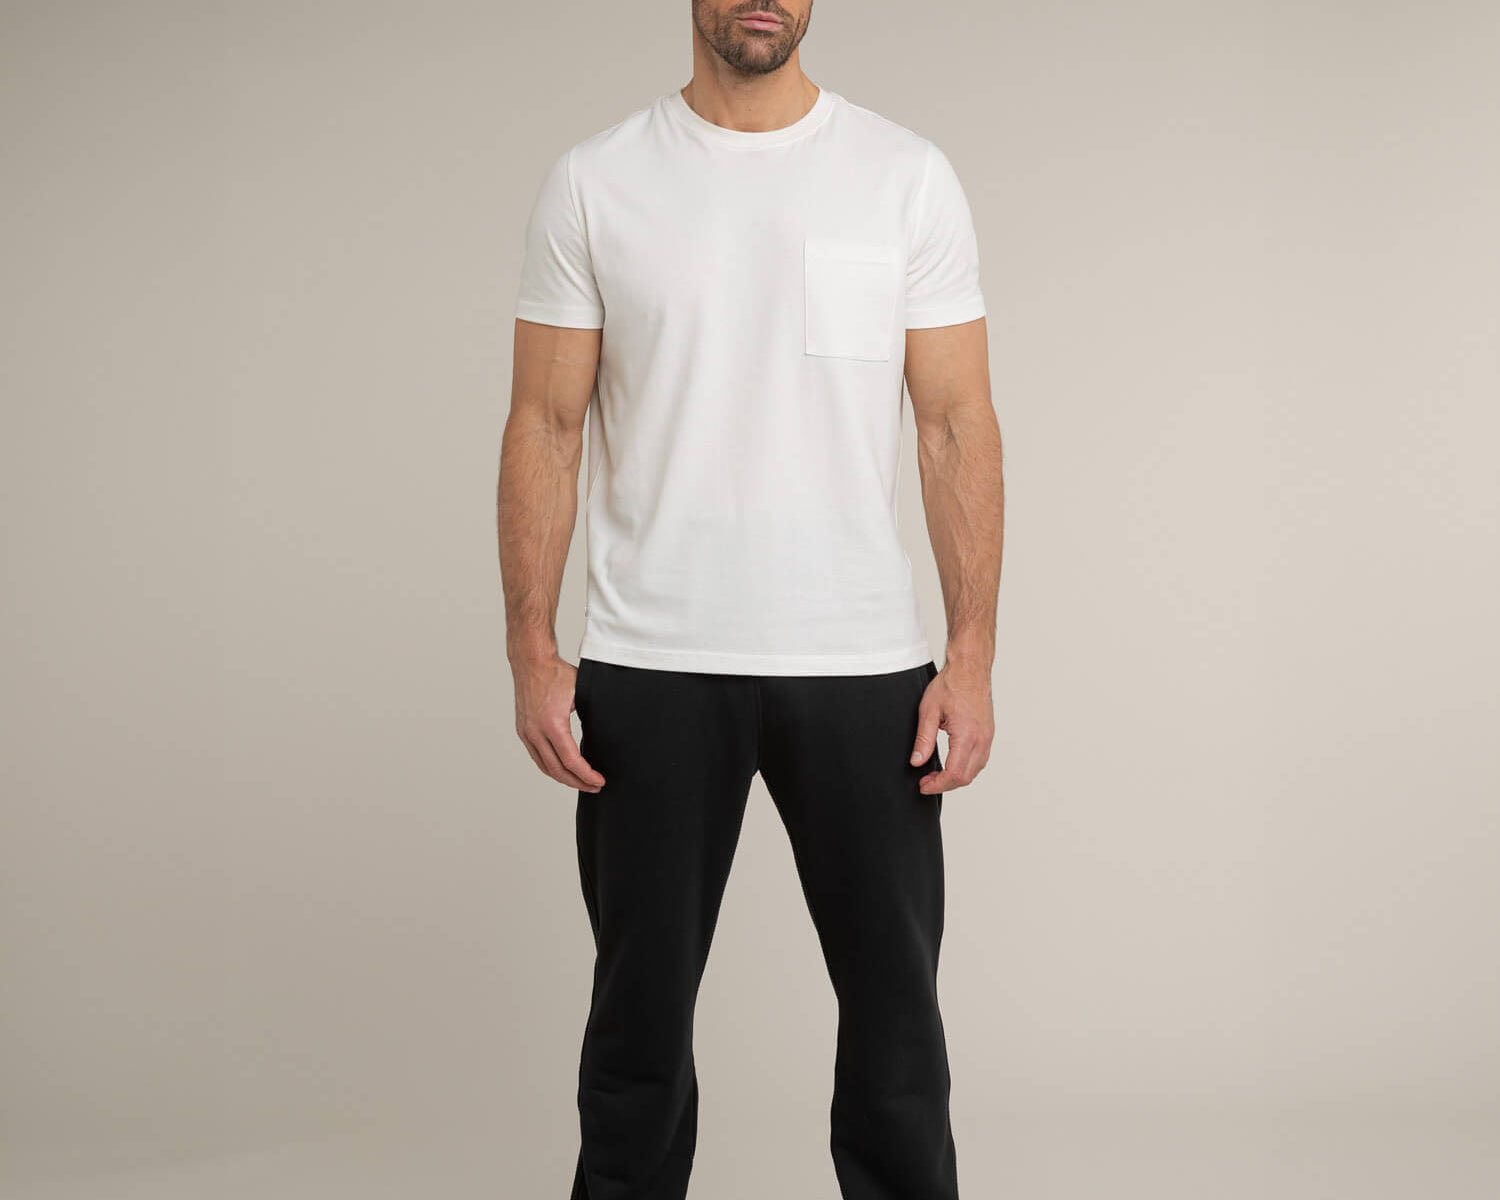 Herren Outfit Baumwoll Basic T Shirt Tasche Weiß Off White Jogginghose